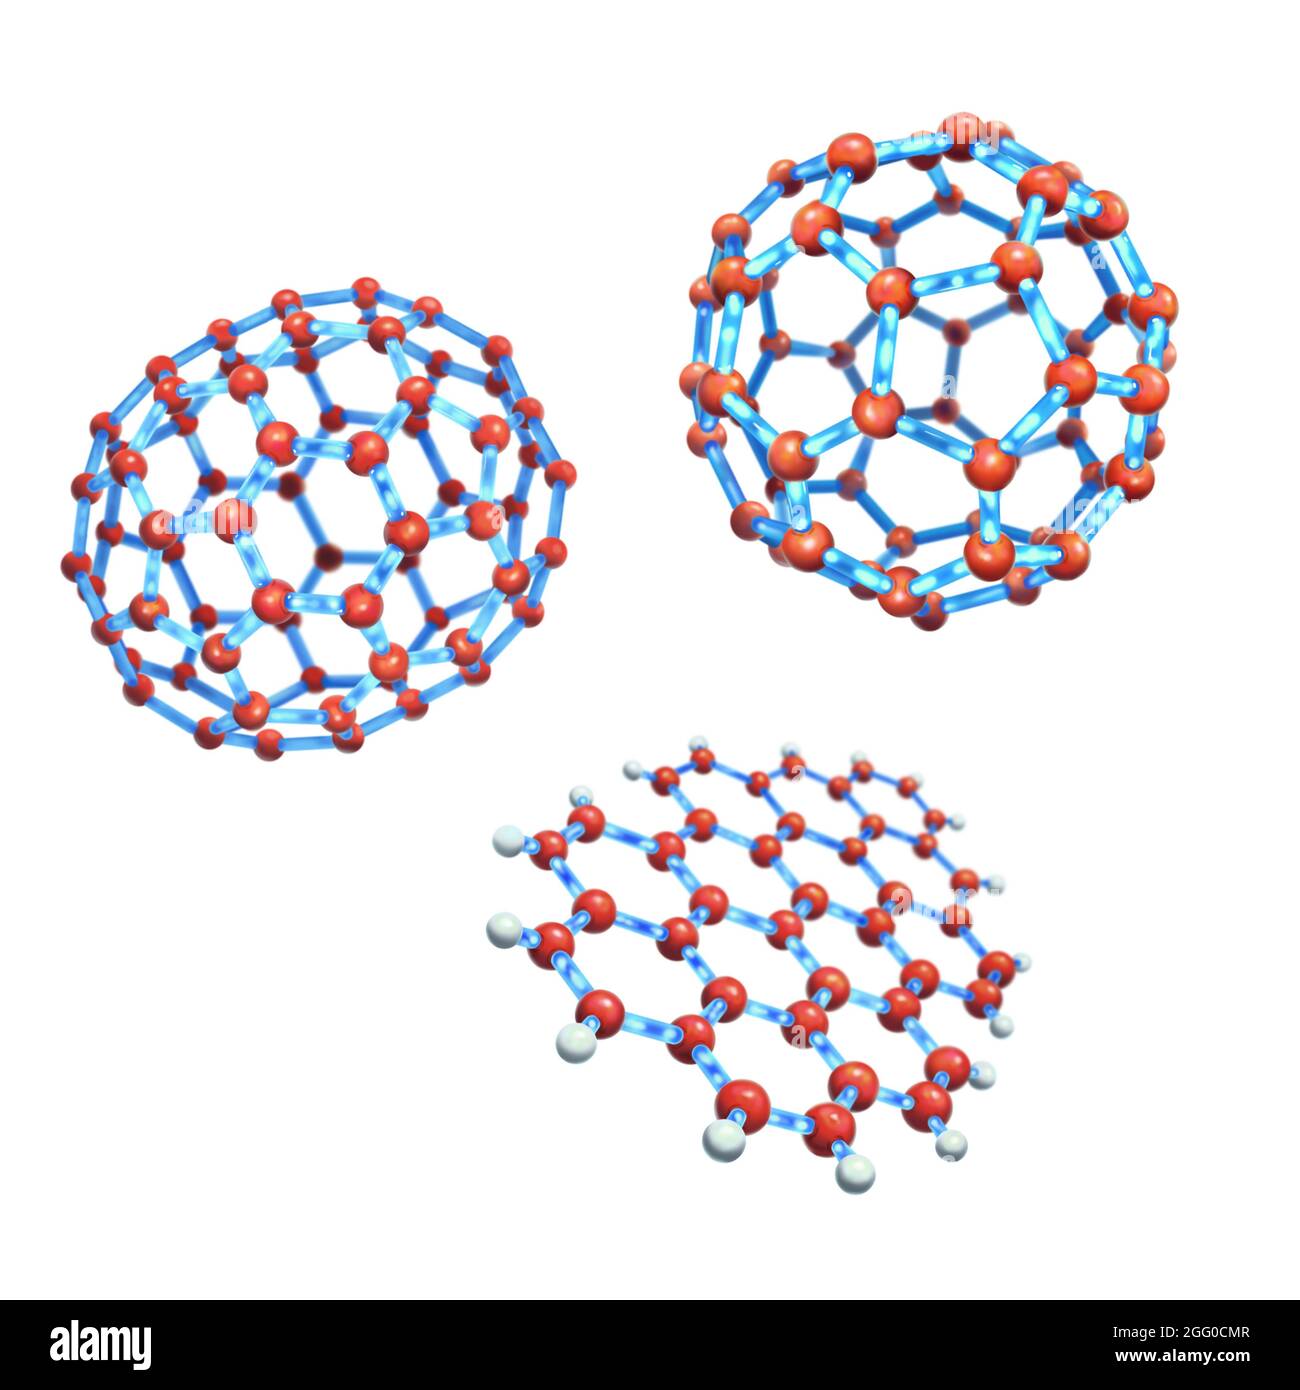 Abbildung großer Kohlenstoffmoleküle mit C70-Fulleren (links), C60-Fulleren und einem polyzyklischen aromatischen Kohlenwasserstoff. Stockfoto